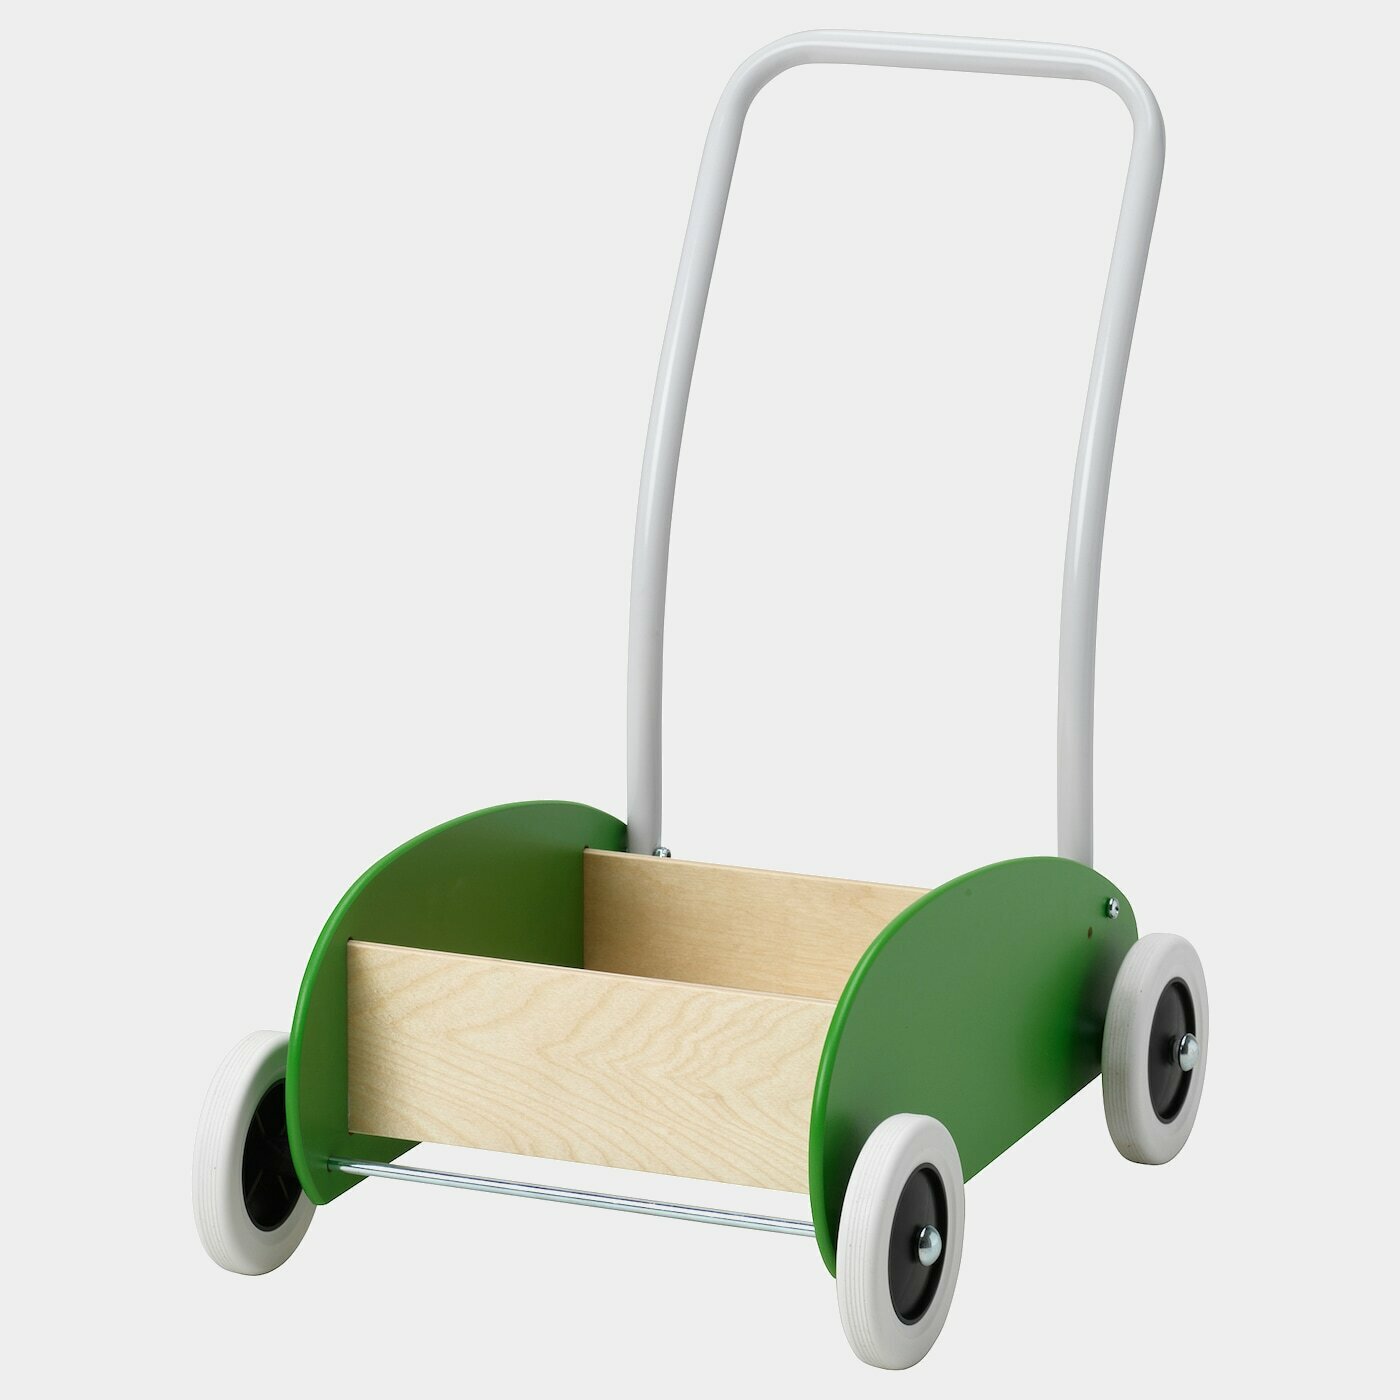 MULA Wagen zum Laufenlernen  - Babyspielzeug - Babyausstattung & Kinderzimmerzubehör Ideen für dein Zuhause von Home Trends. Babyausstattung & Kinderzimmerzubehör Trends von Social Media Influencer für dein Skandi Zuhause.